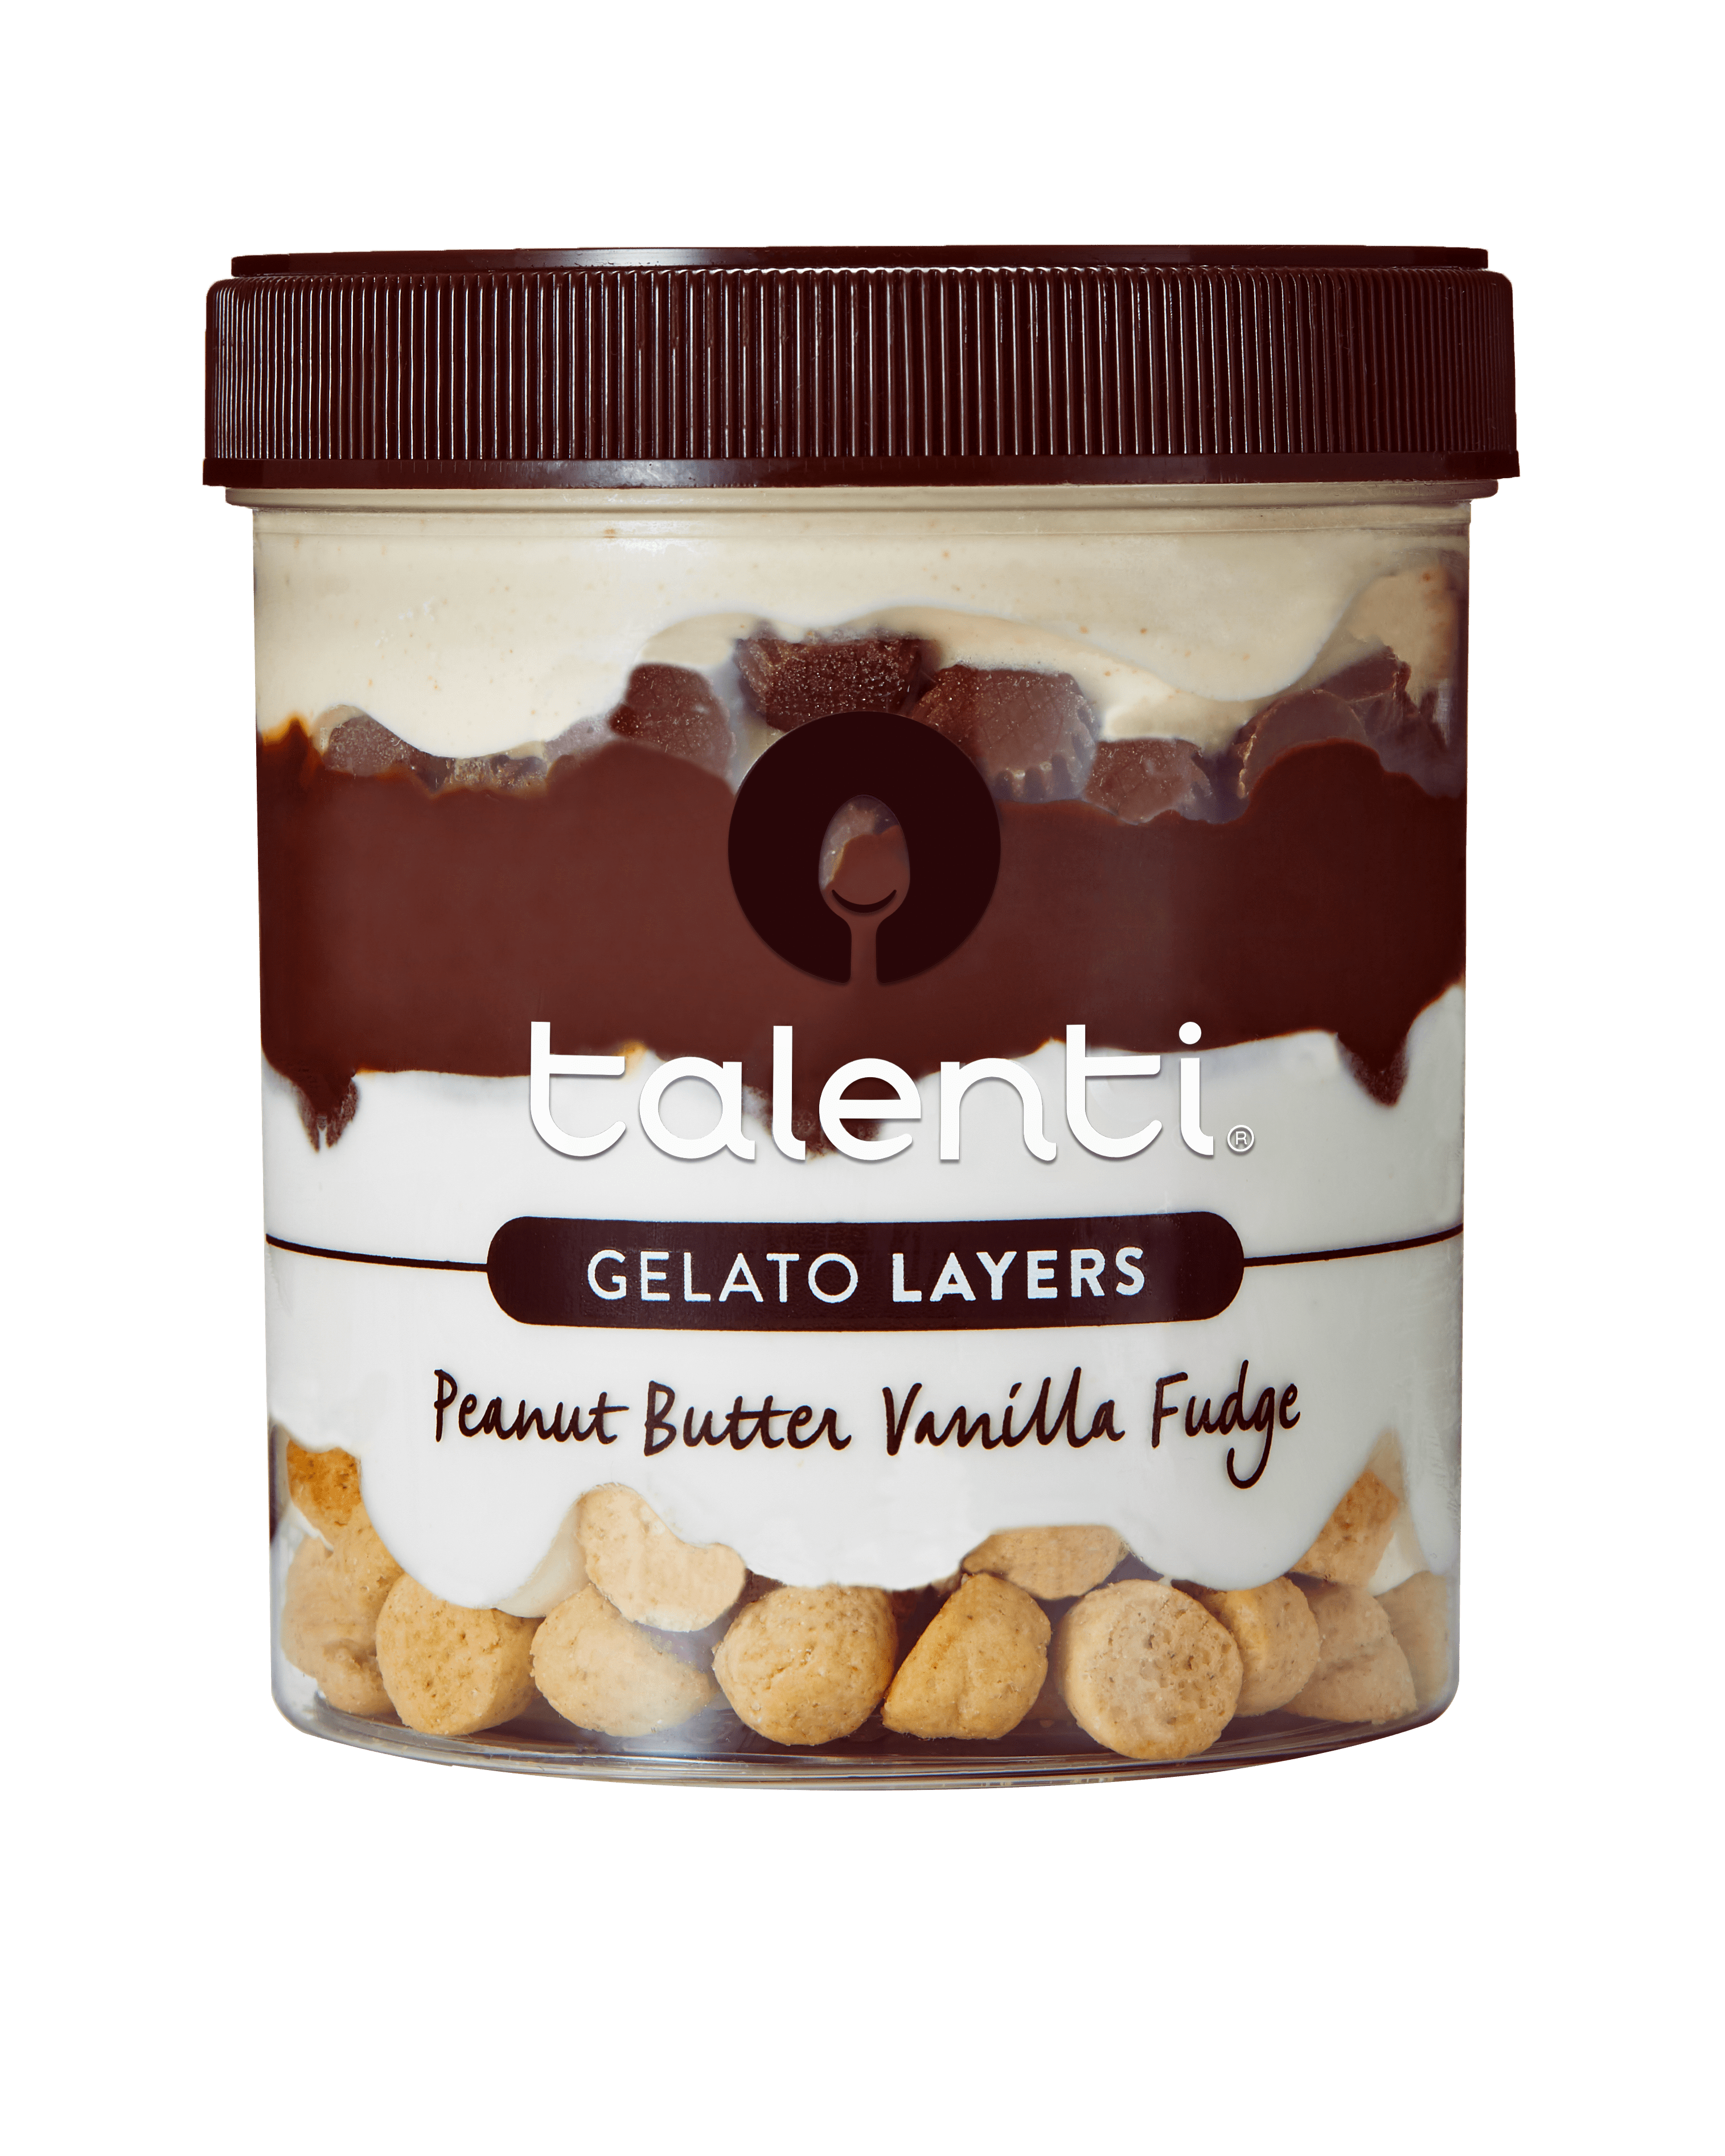 Talenti Released Gelato Layers In Seven Brand New Flavors